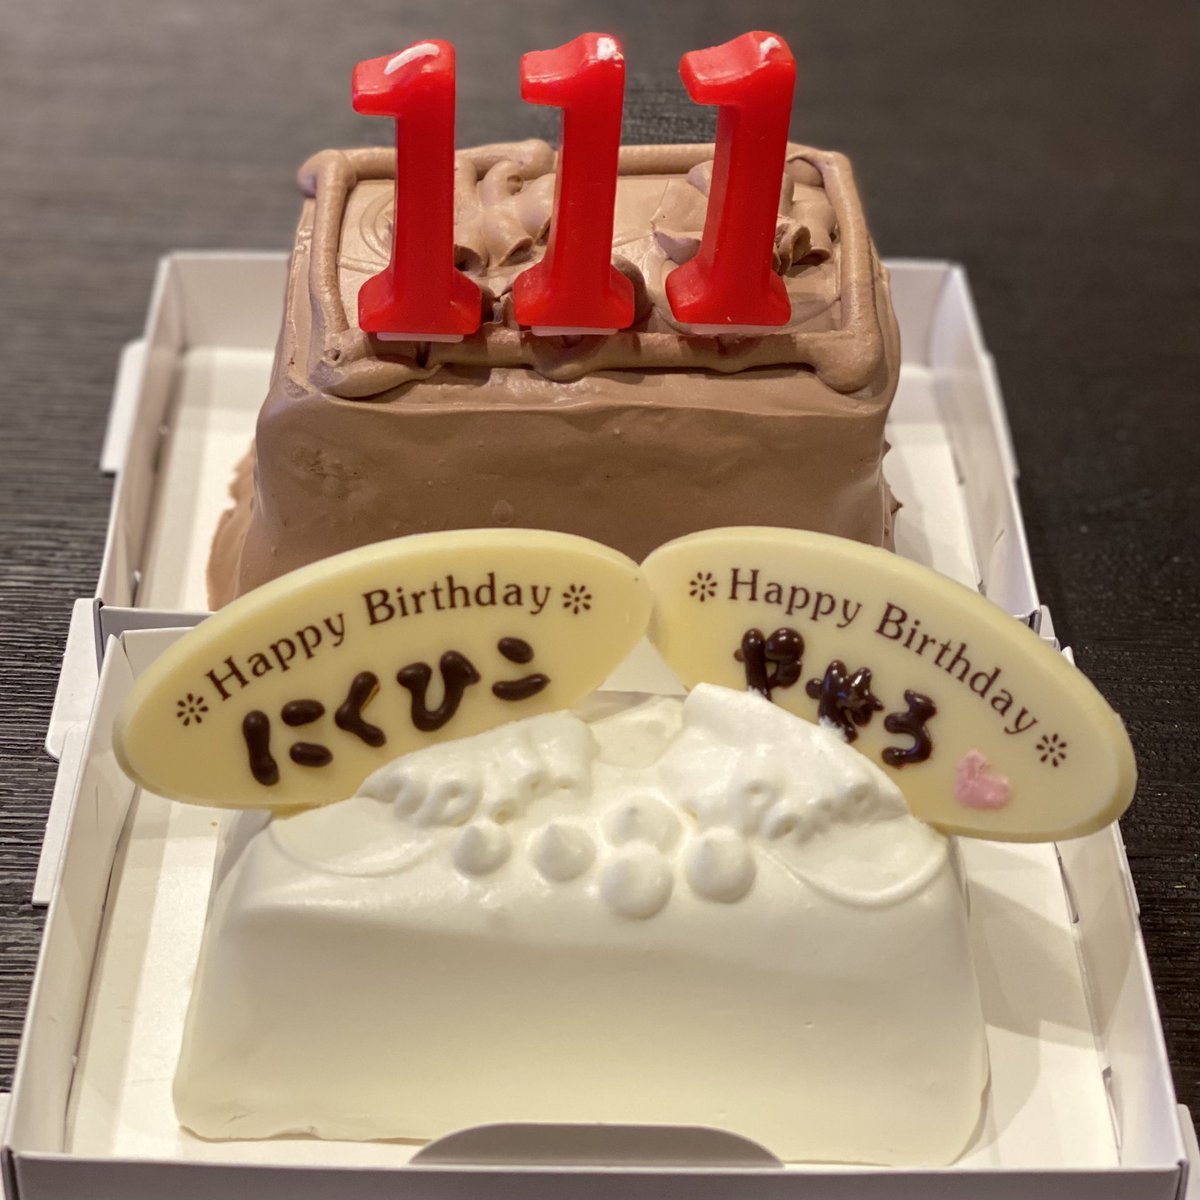 ニクヒコ Nikuhiko Official お陰様で無事に48歳に 沢山のメッセージありがとう ワイフに大好きな Topsのケーキで祝って貰った プレートに やせろ って まぁ適当に生きていきますんでヨロニク Happybirthday 誕生日 年男 Tops トップス